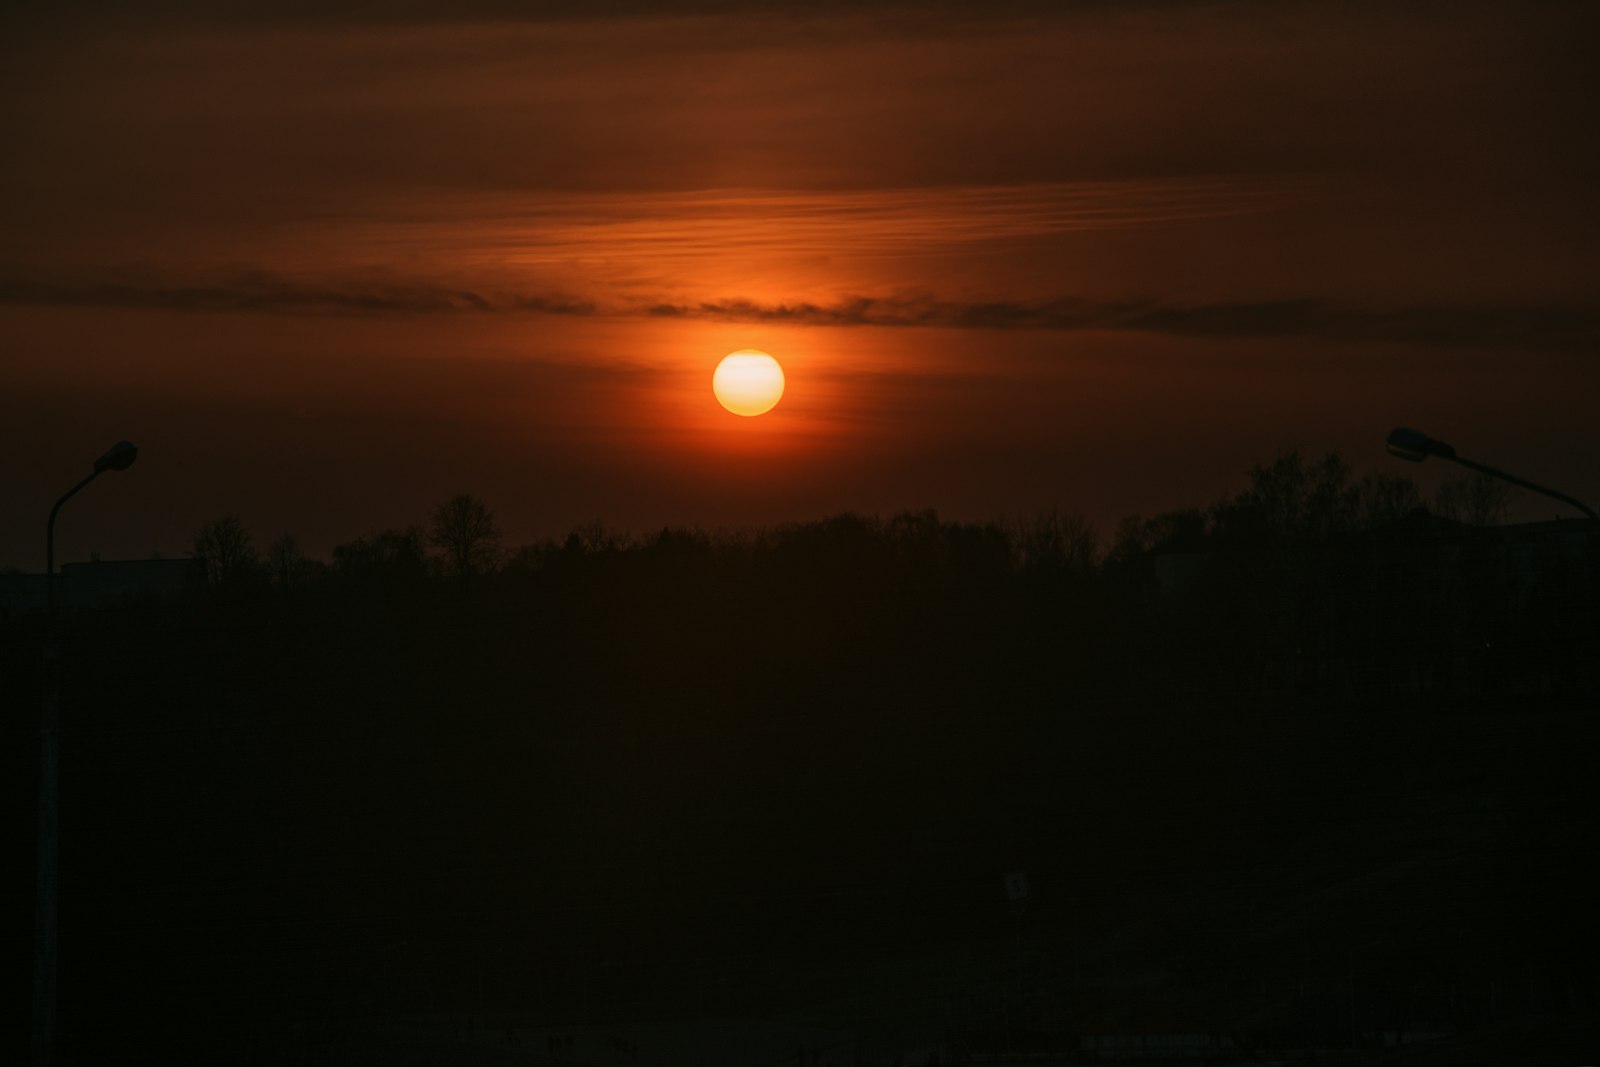 Nikon AF-S DX Nikkor 18-105mm F3.5-5.6G ED VR sample photo. Landscape photography of sunset photography